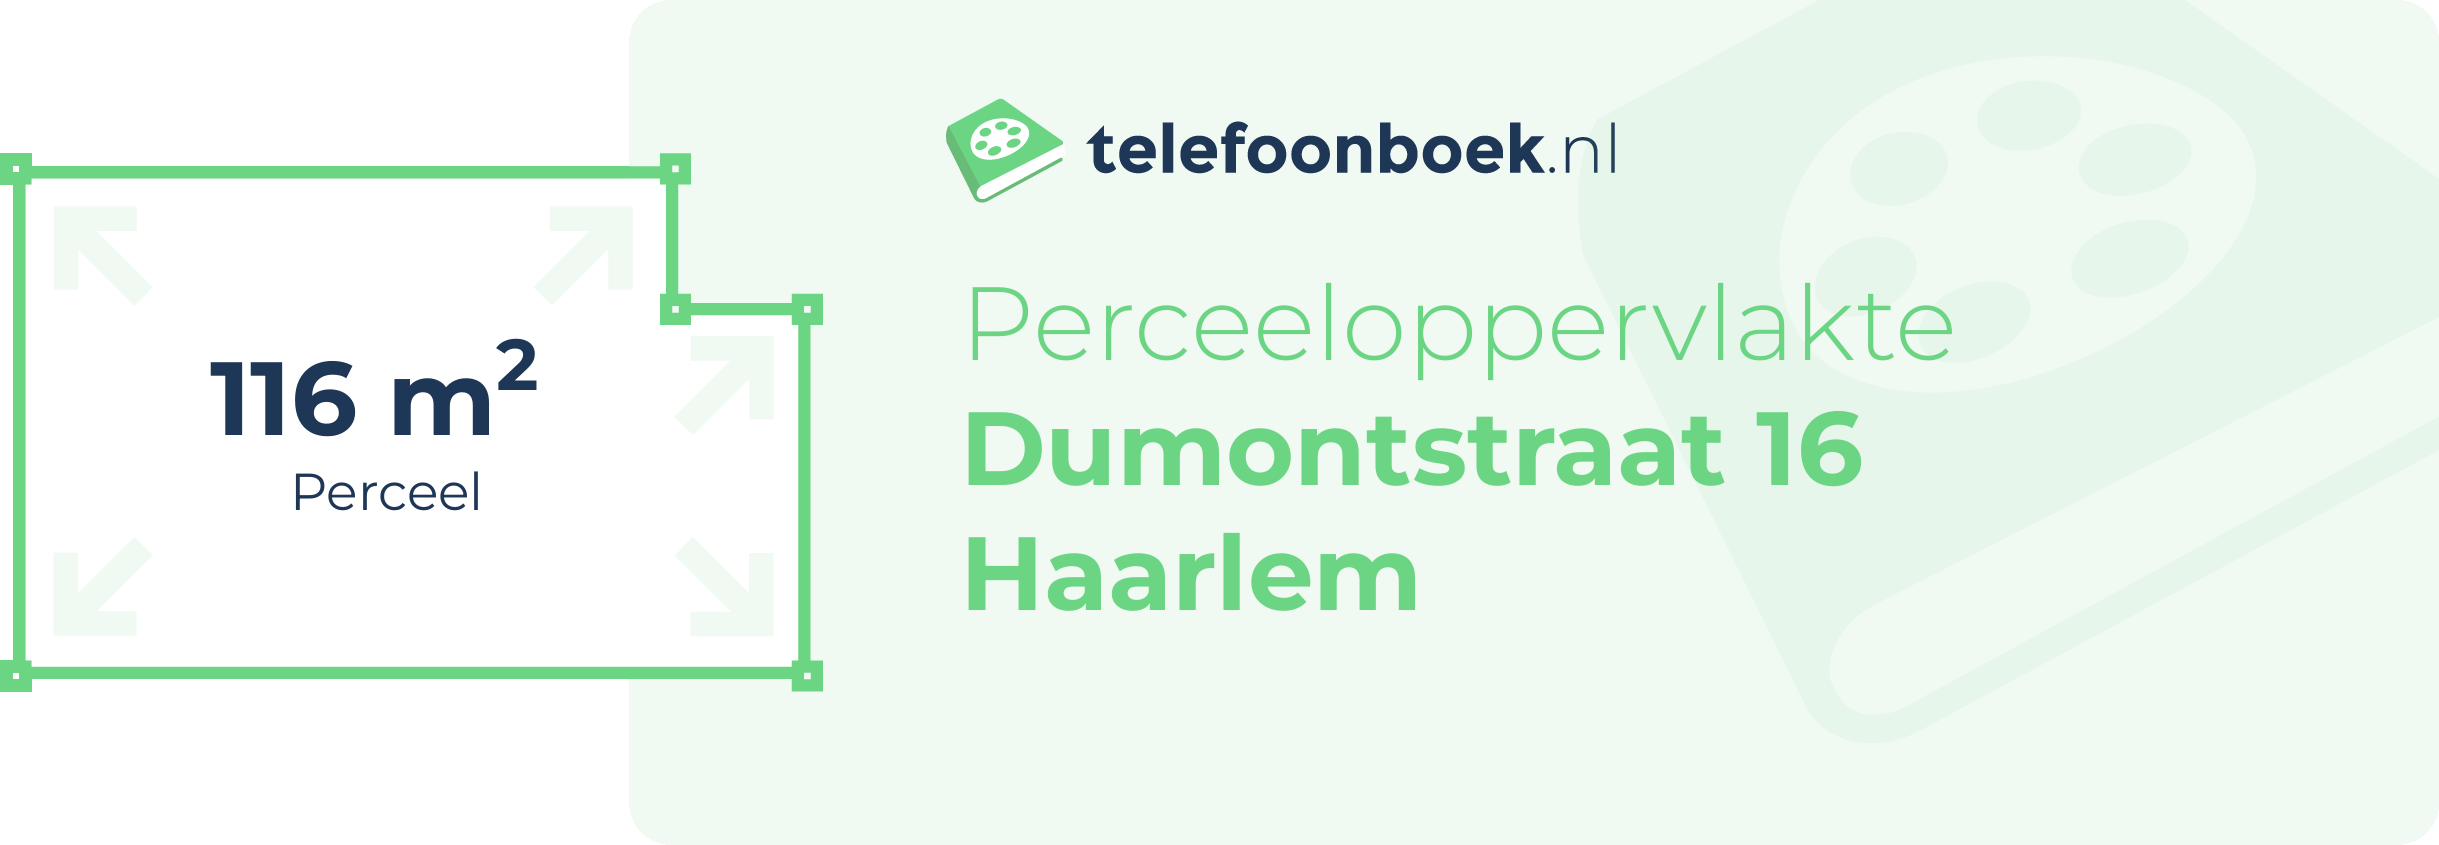 Perceeloppervlakte Dumontstraat 16 Haarlem